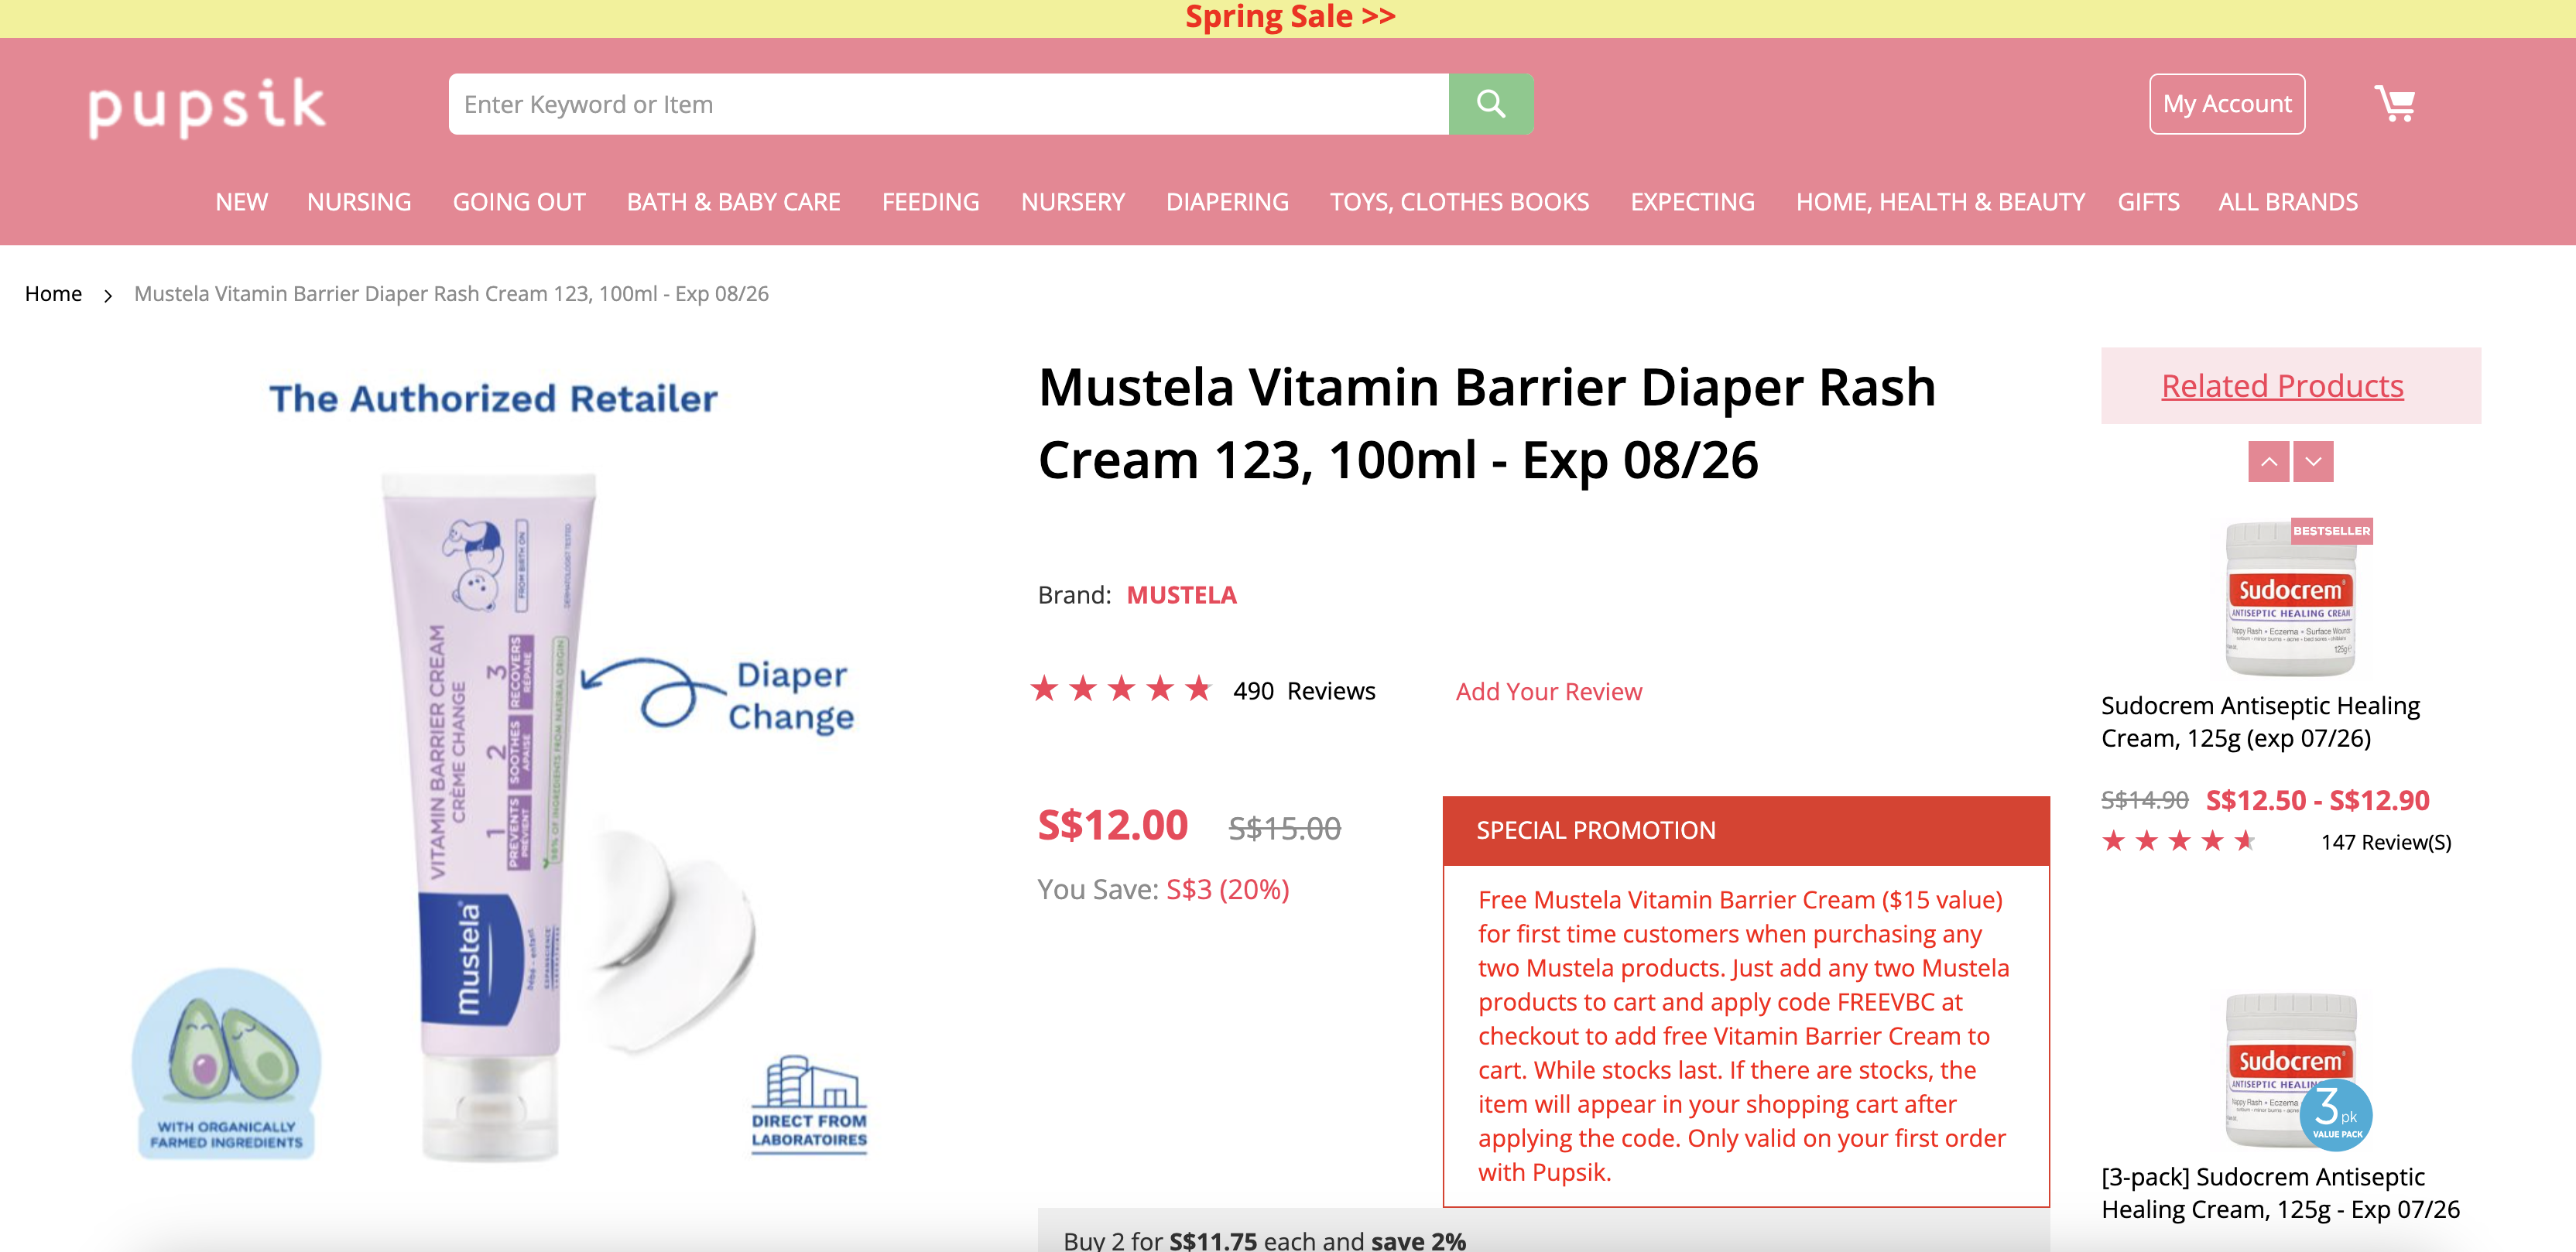 Mustela Vitamin Barrier Diaper Rash Cream 123